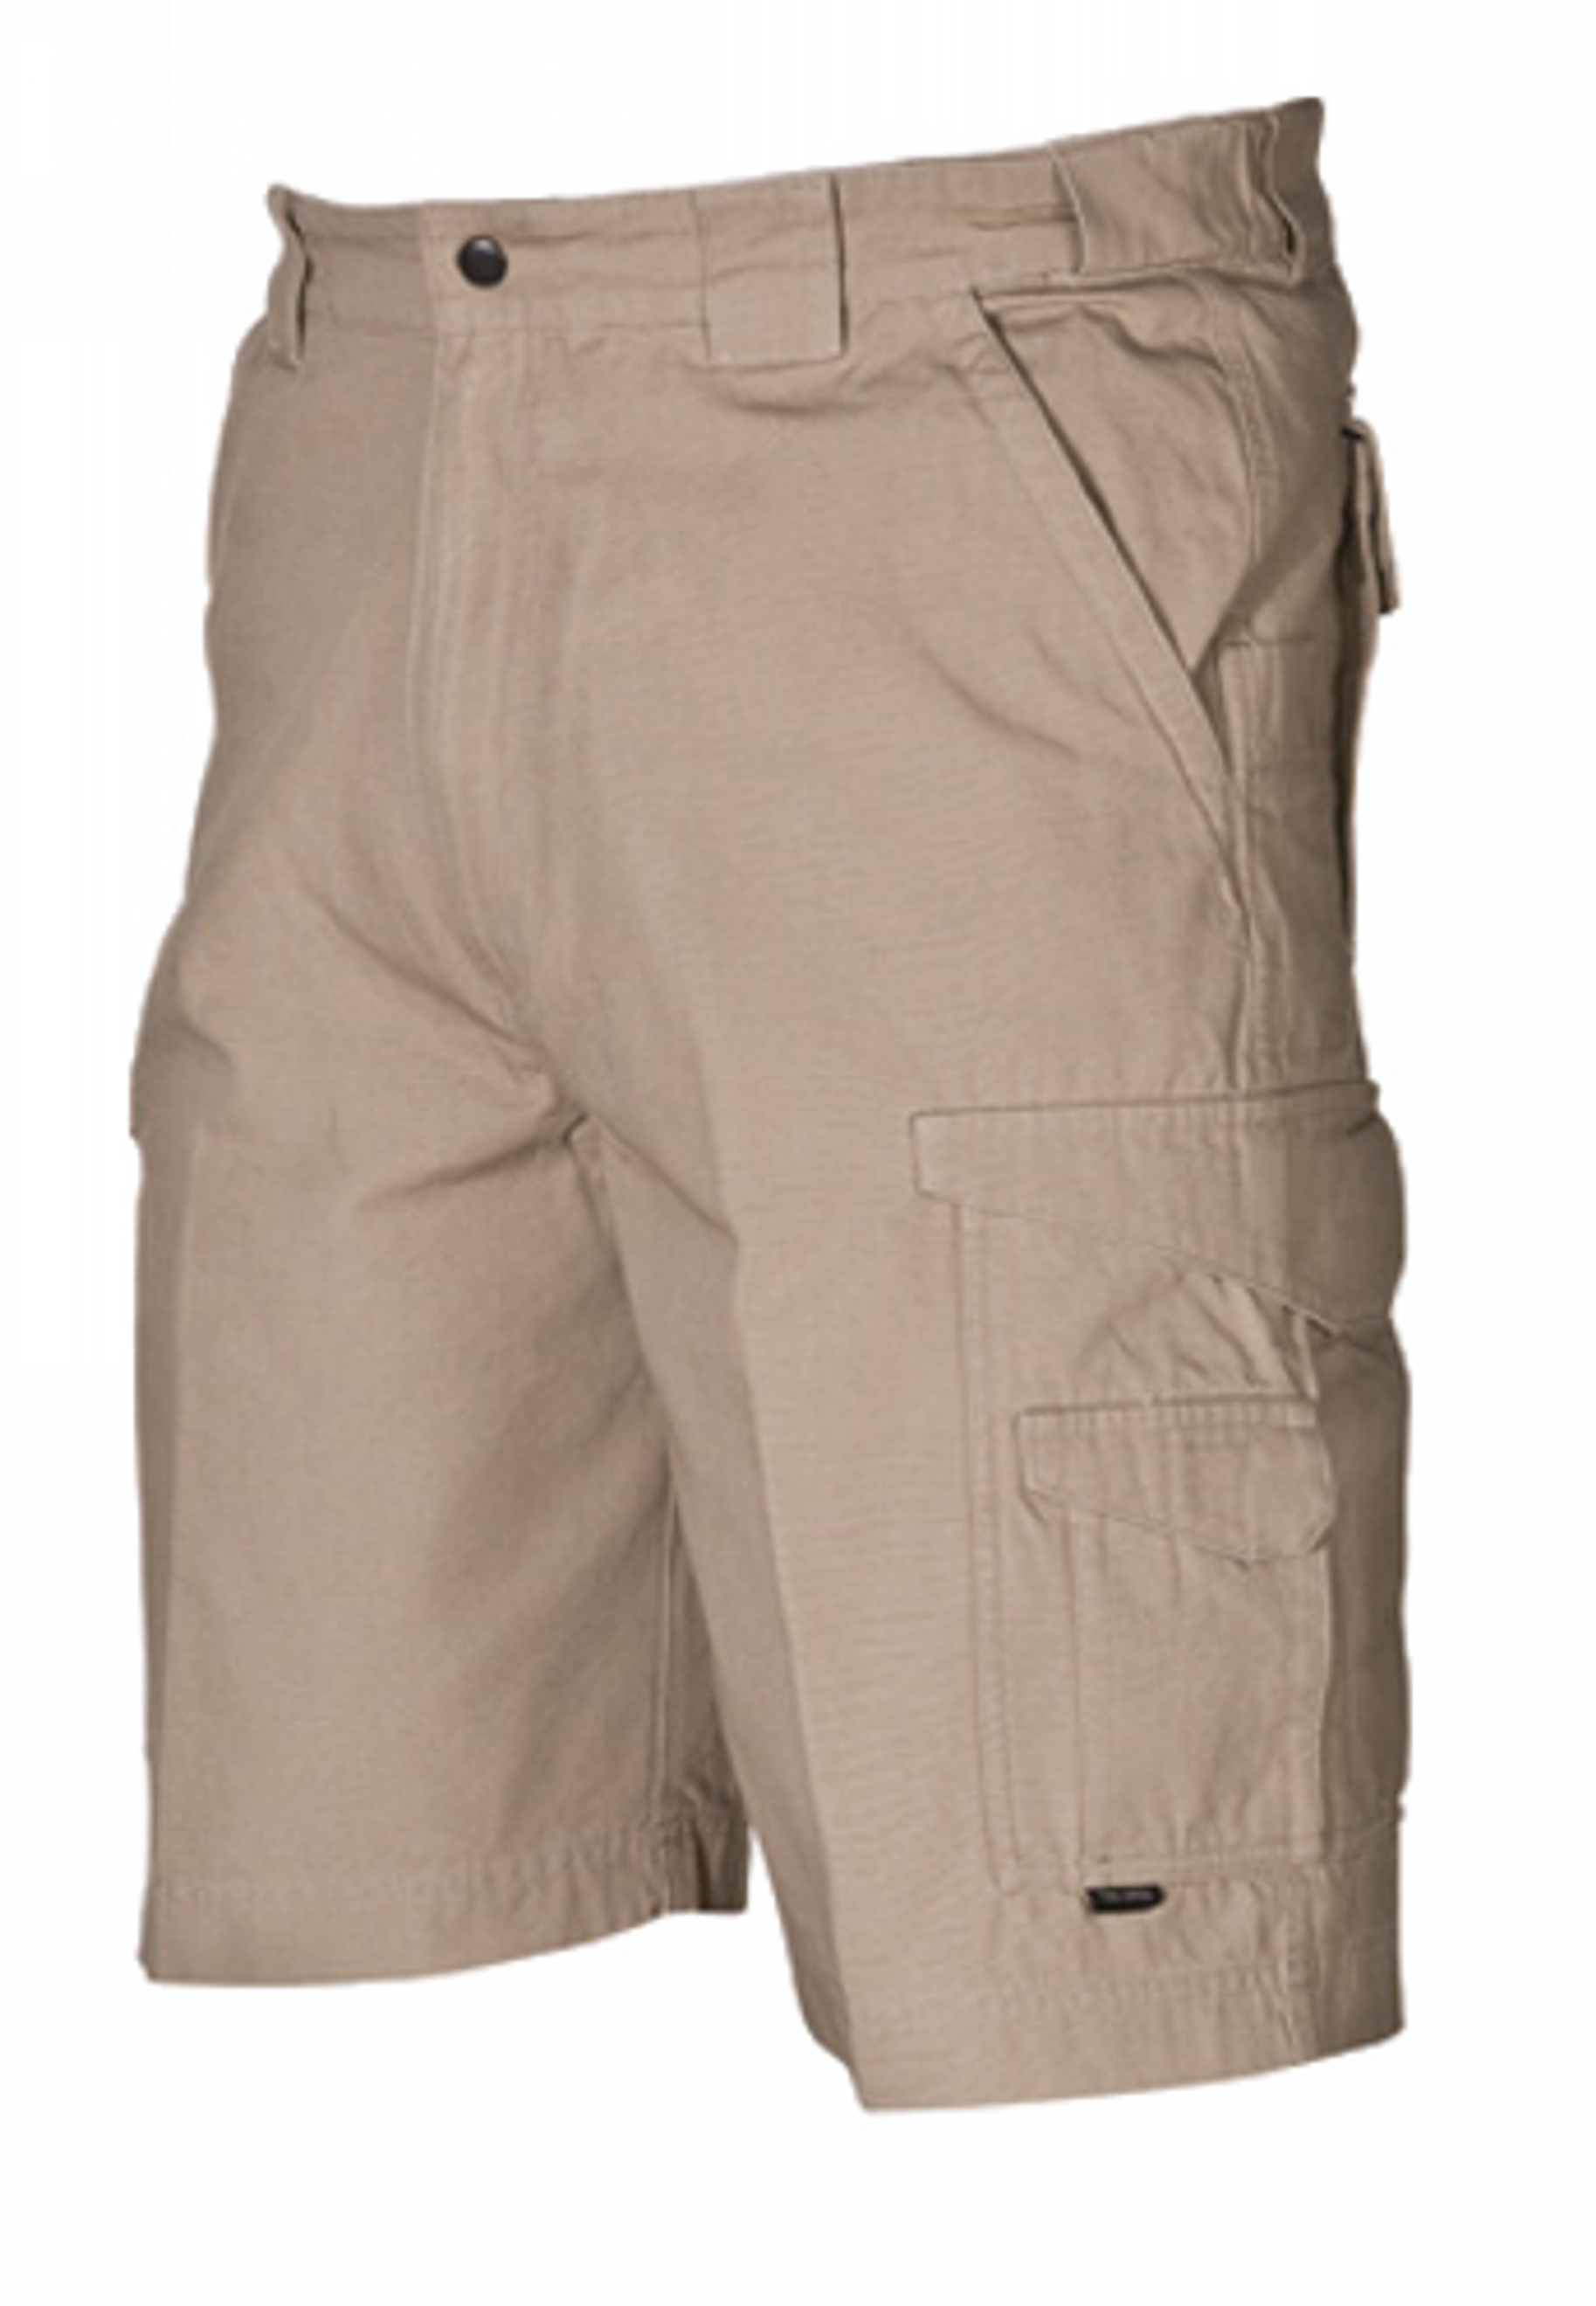 Original Tactical Shorts - KRTSP-4269007